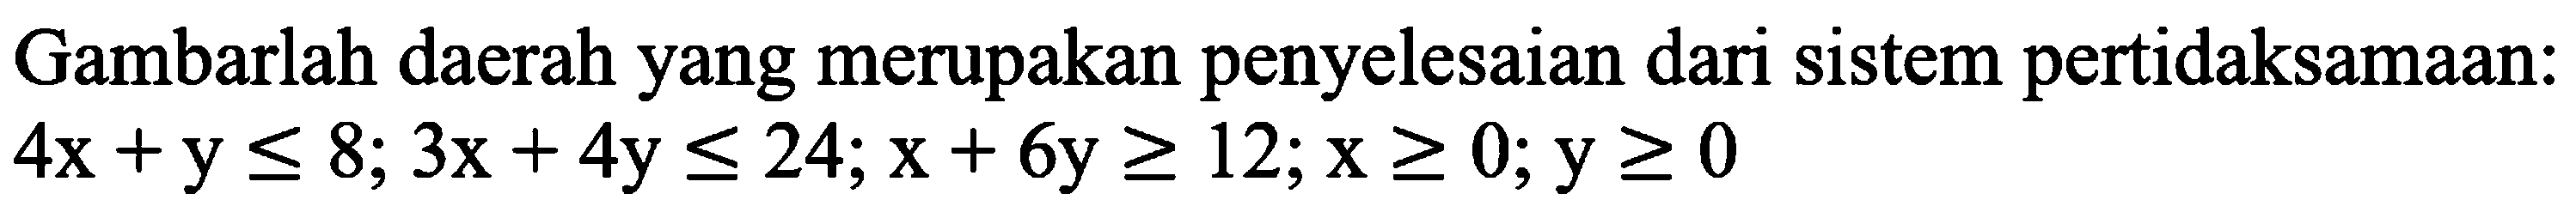 Gambarlah daerah yang merupakan penyelesaian dari sistem pertidaksamaan: 4x+y<=8; 3x+4y<=24; x+6y>=12; x>=0; y>=0